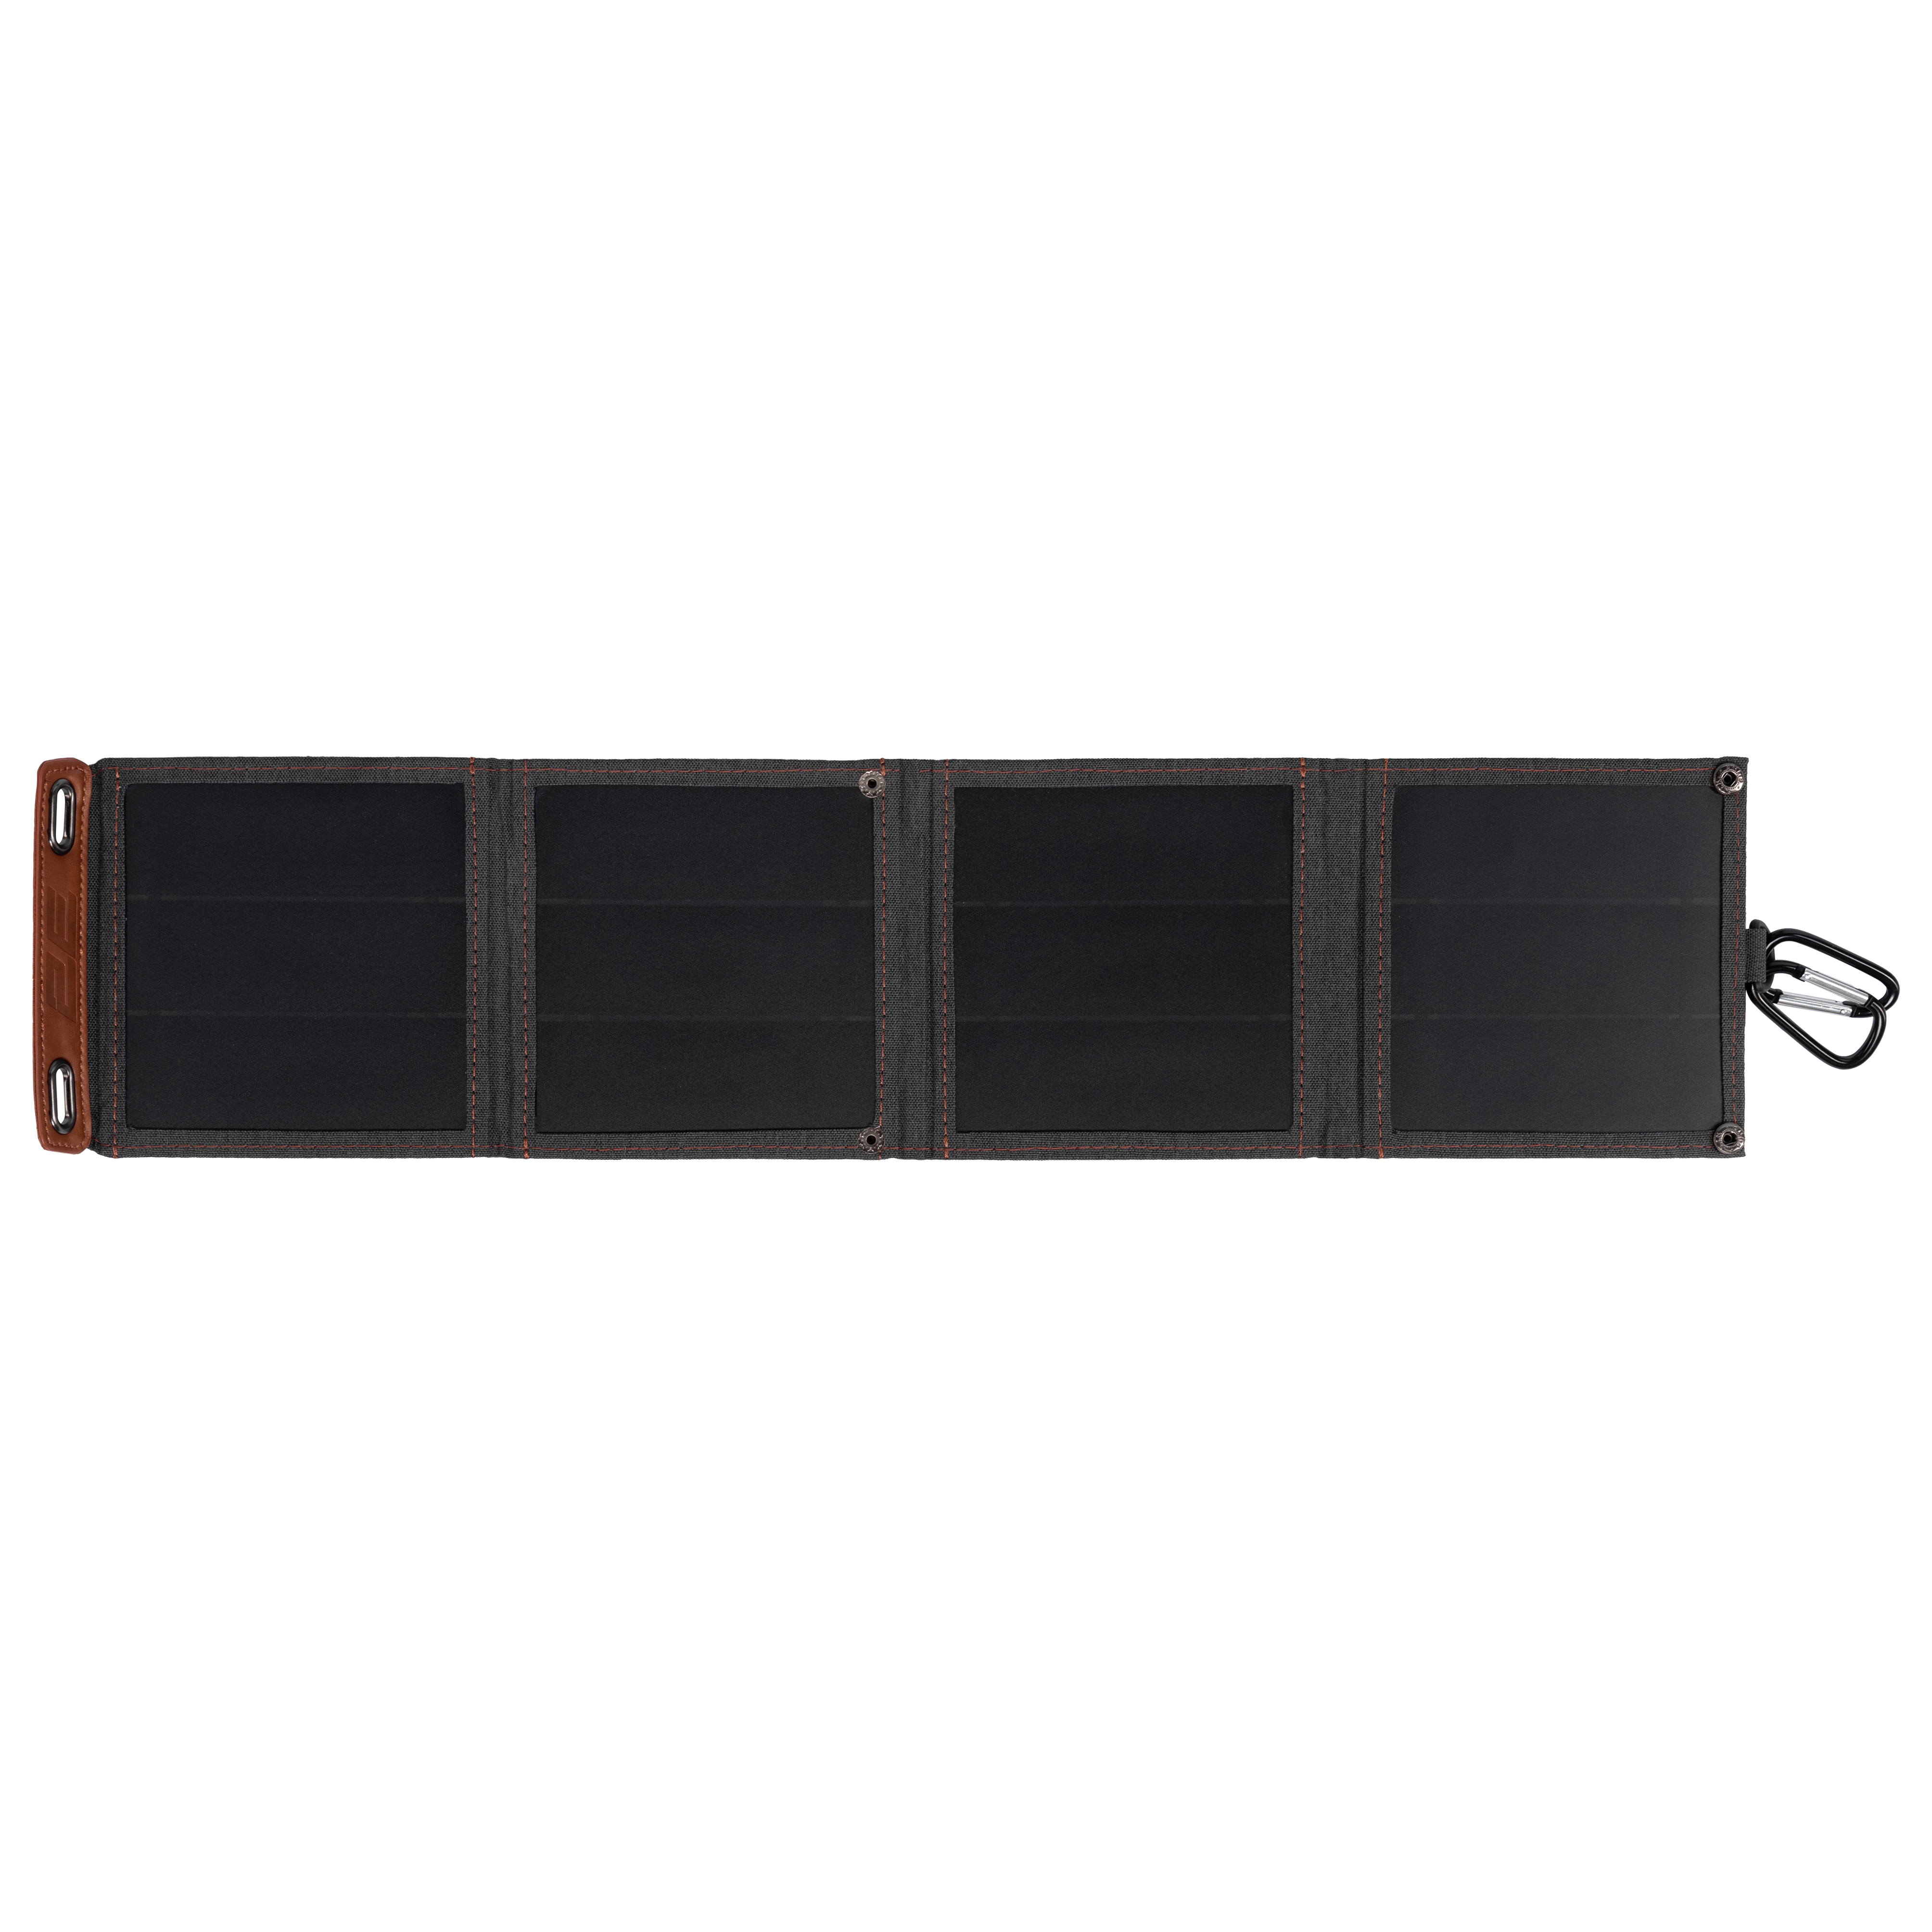 Цена портативная солнечная батарея 2E 2E-PSP0010 в Херсоне